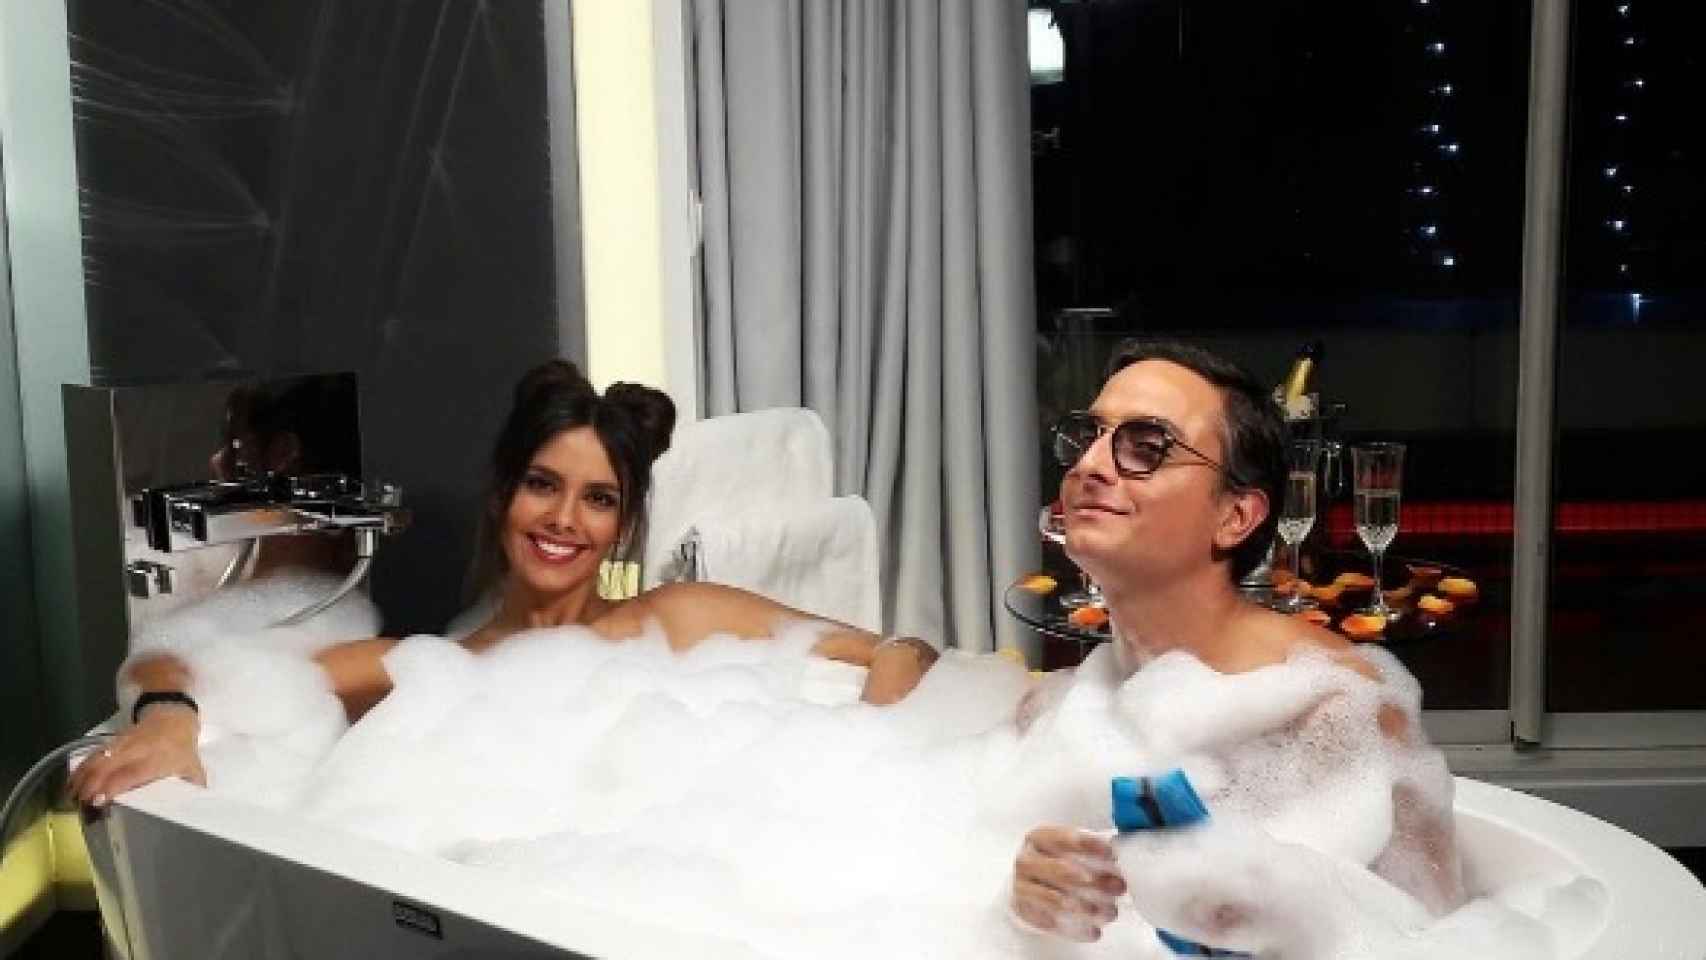 Fotos del día: el romántico baño de Cristina Pedroche con otro hombre